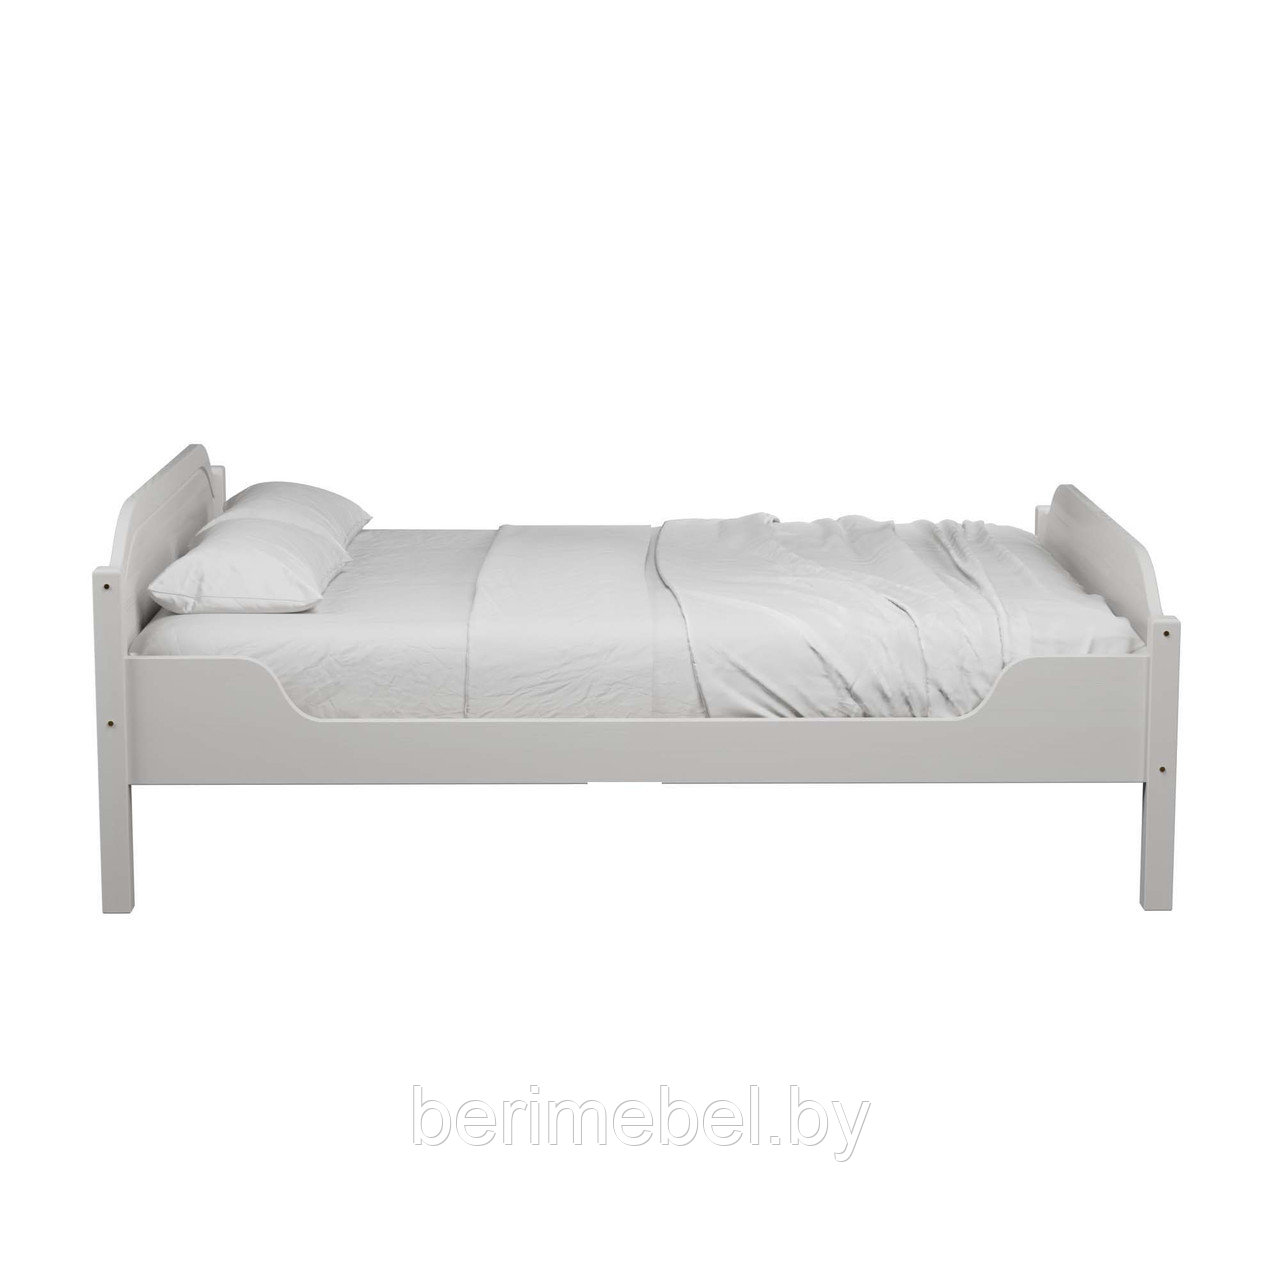 Кровать двуспальная «Кельн 2» (140х200) белый воск